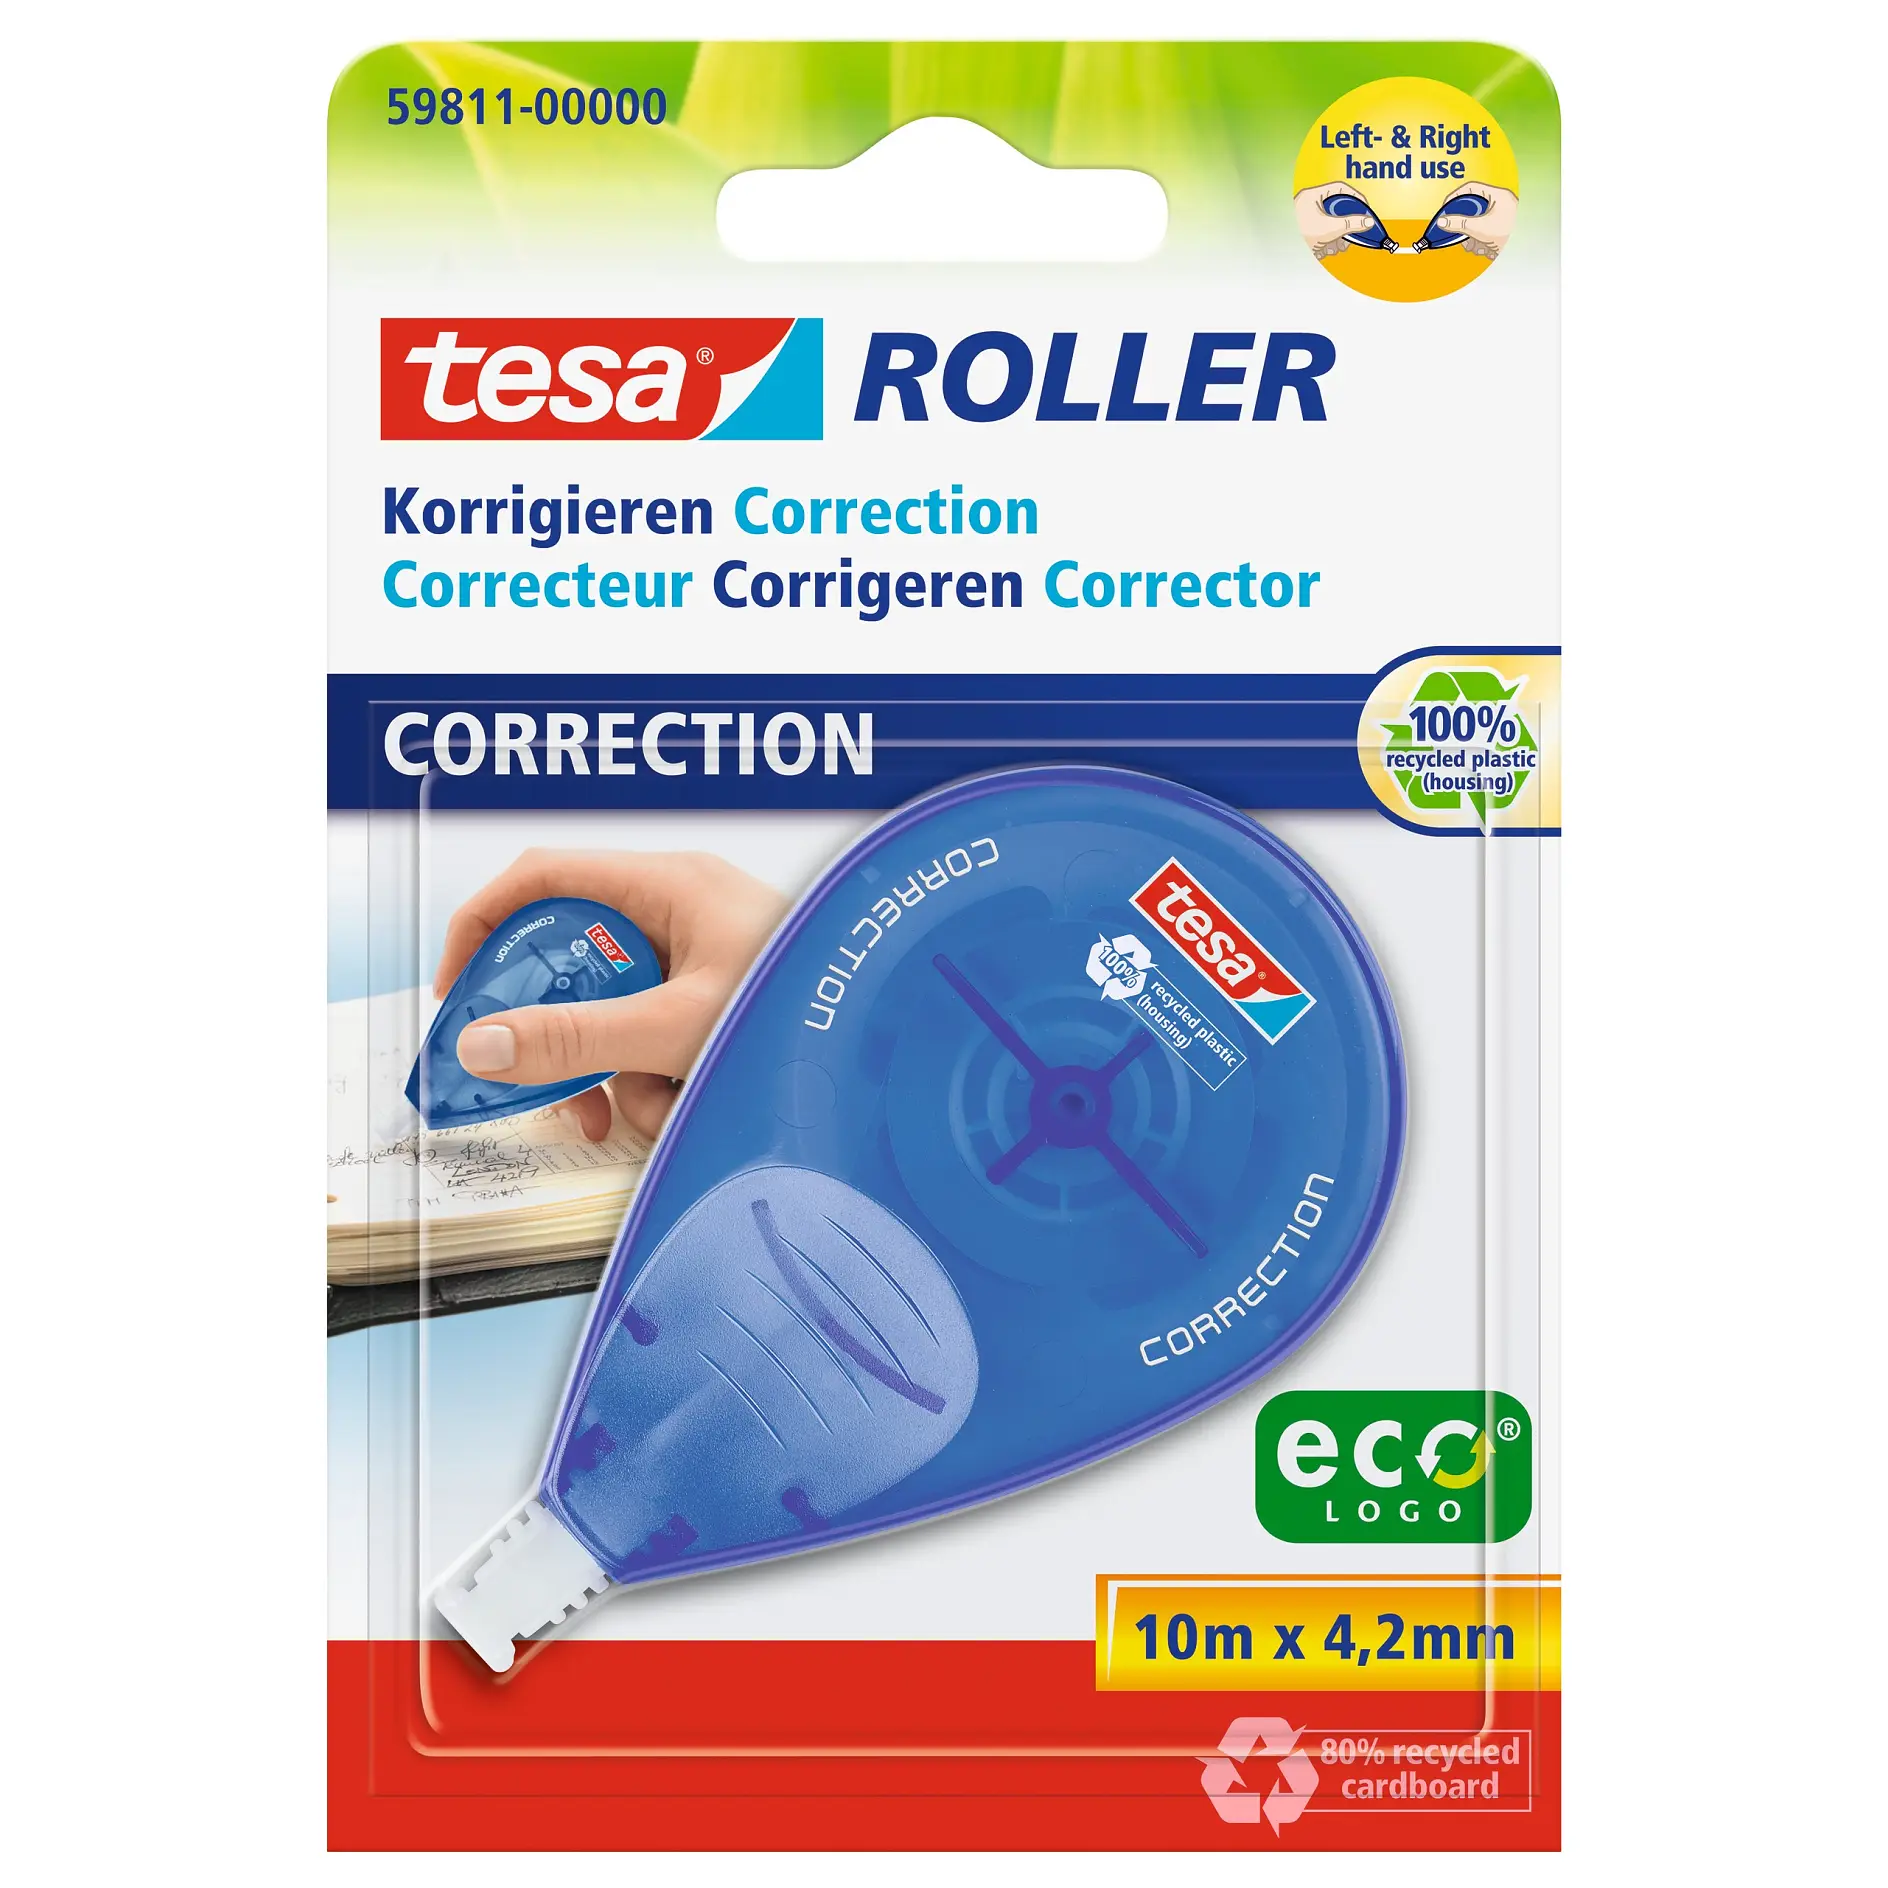 [en-en] tesa Correction Roller, disposable, 10m x 4.2mm